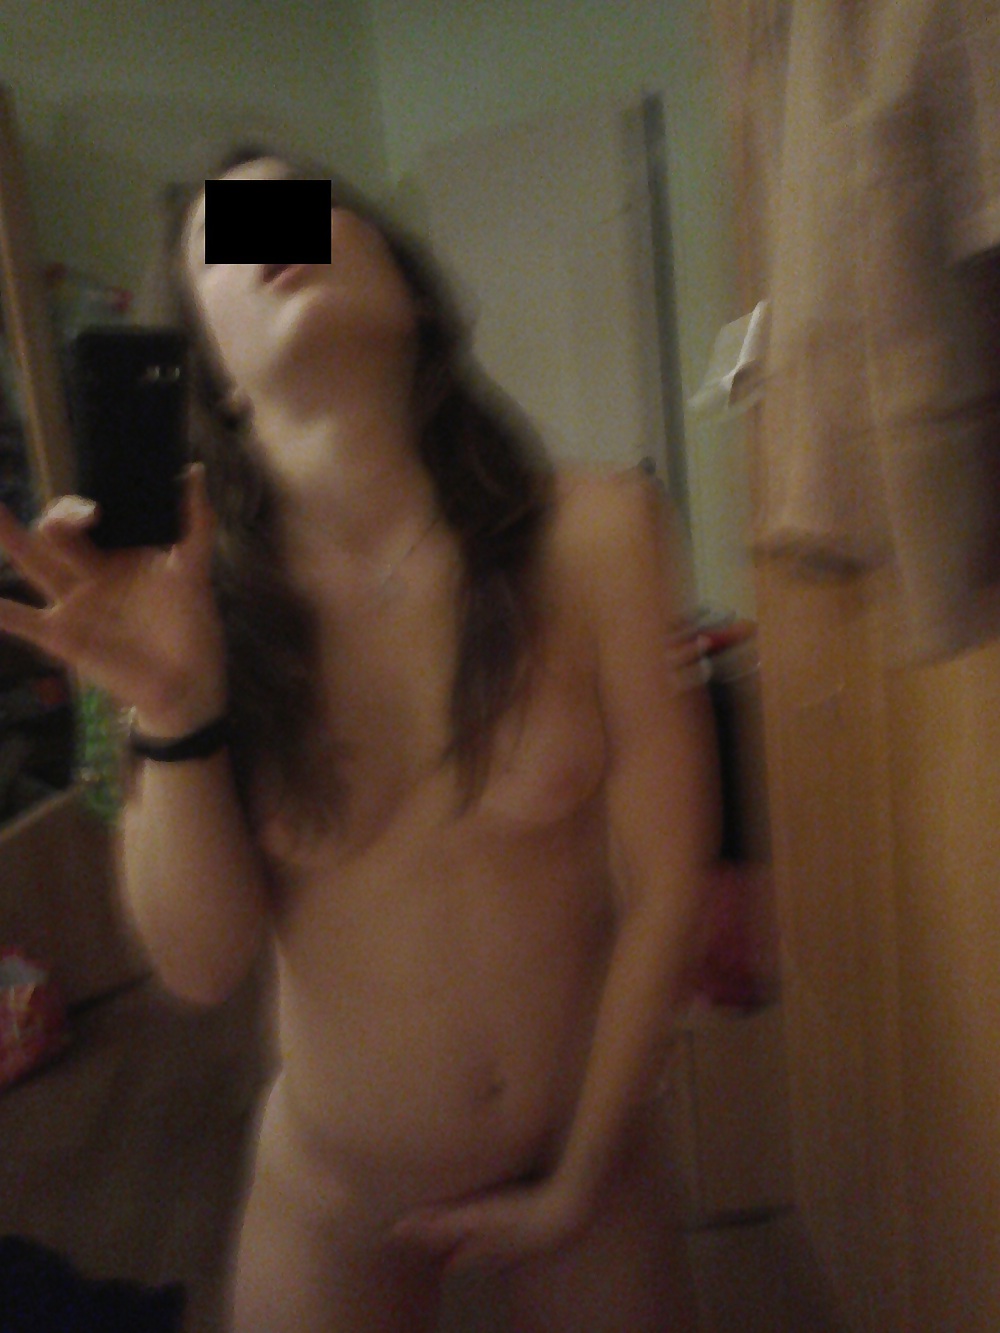 Exposed 18yo Girlfriend - Amateur German Private Nude 2 #22106508